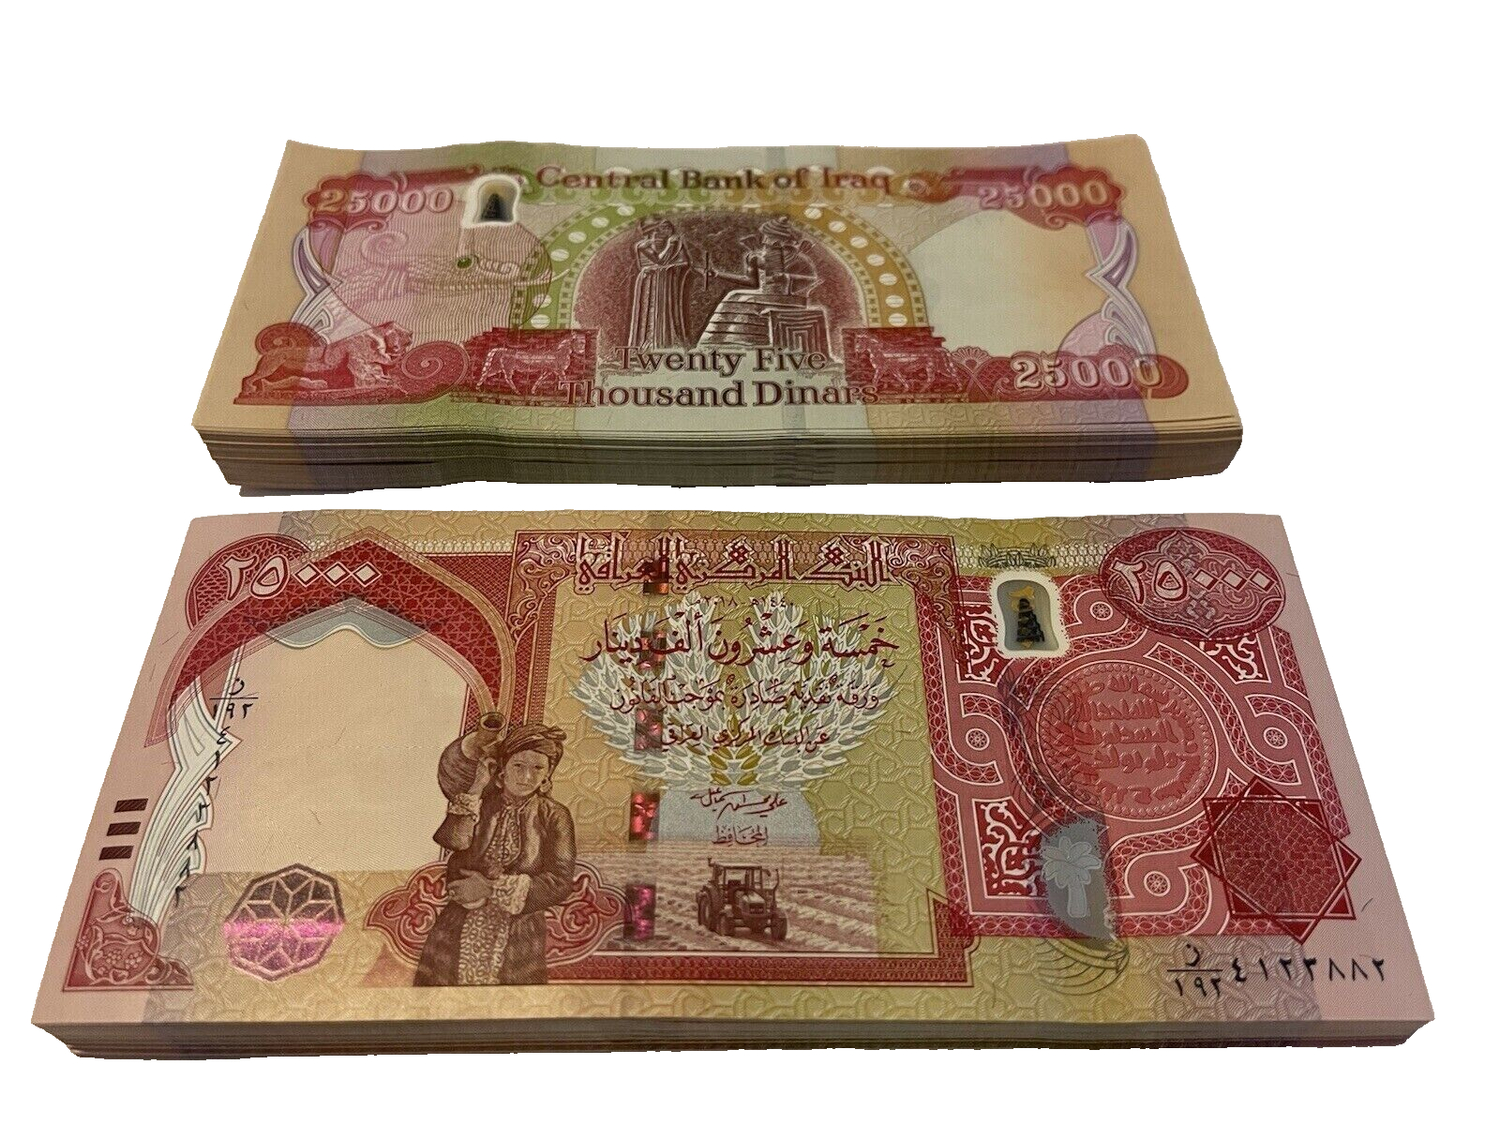 Iraqi Dinars (40 x 25,000) IQD, Random Year, Uncirculated